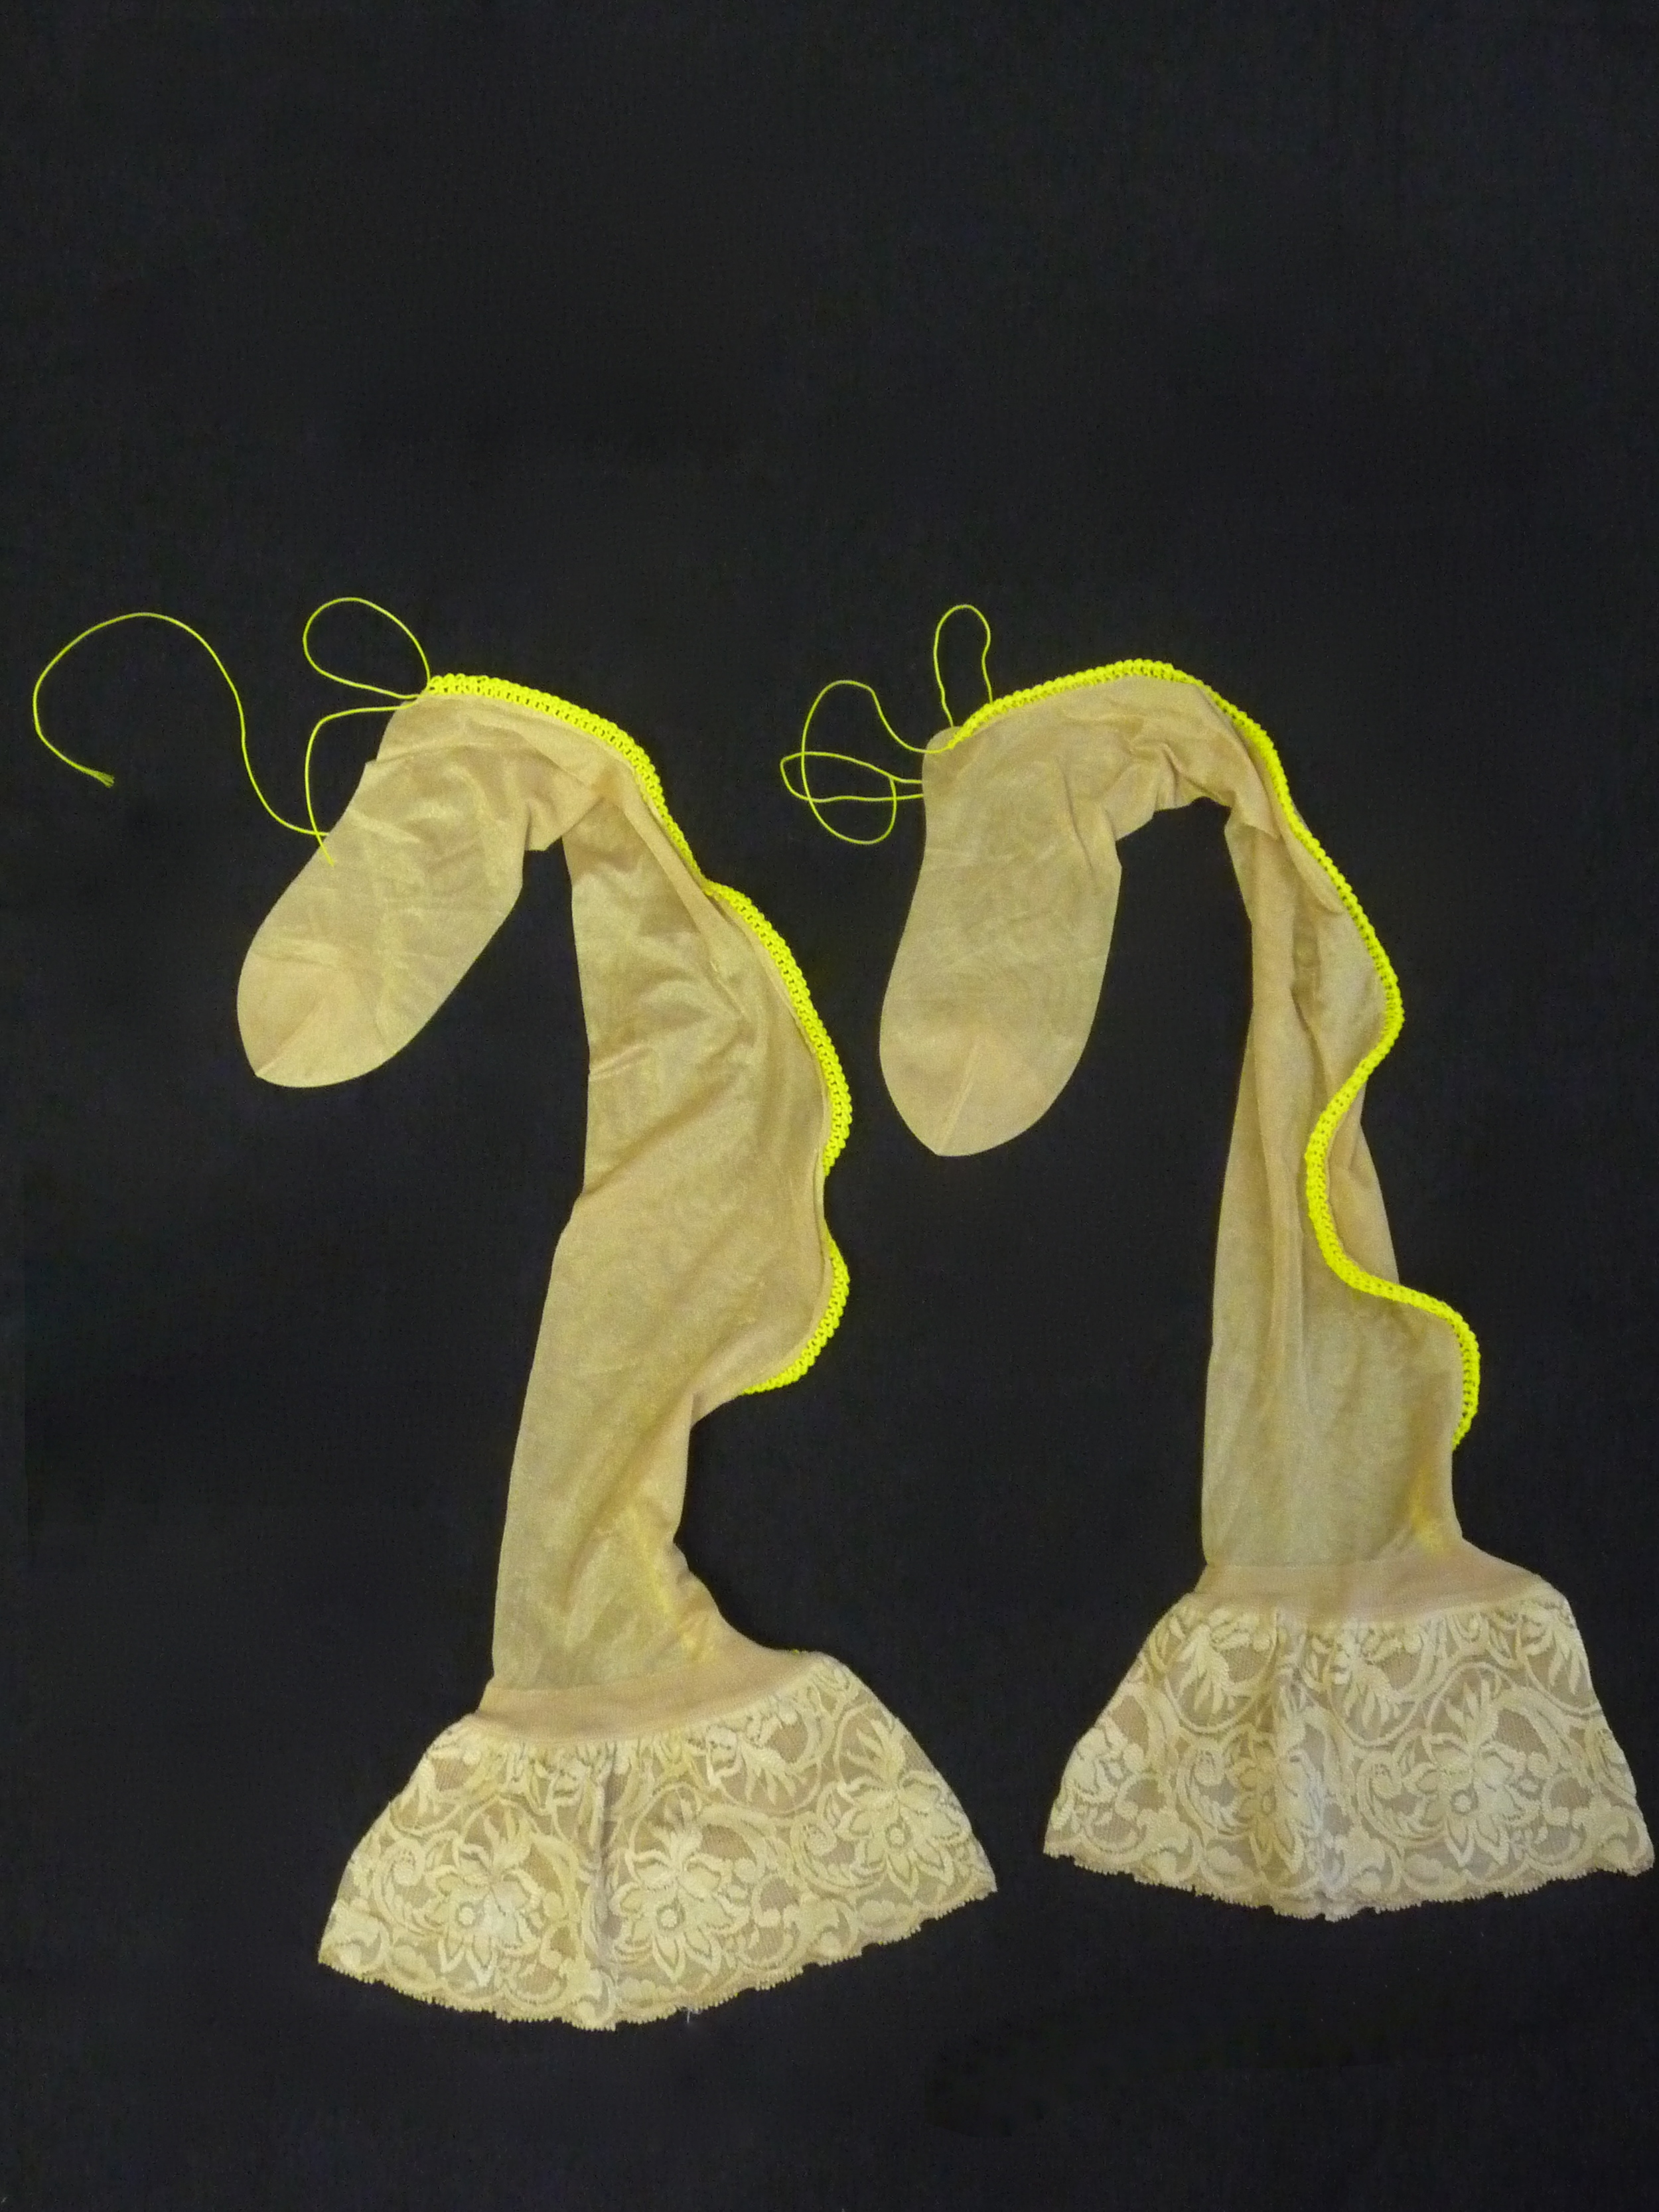  Unentdlichkeit, Nylons, Maurerschnur, gestrickt,  184 x 56 x 3 cm 